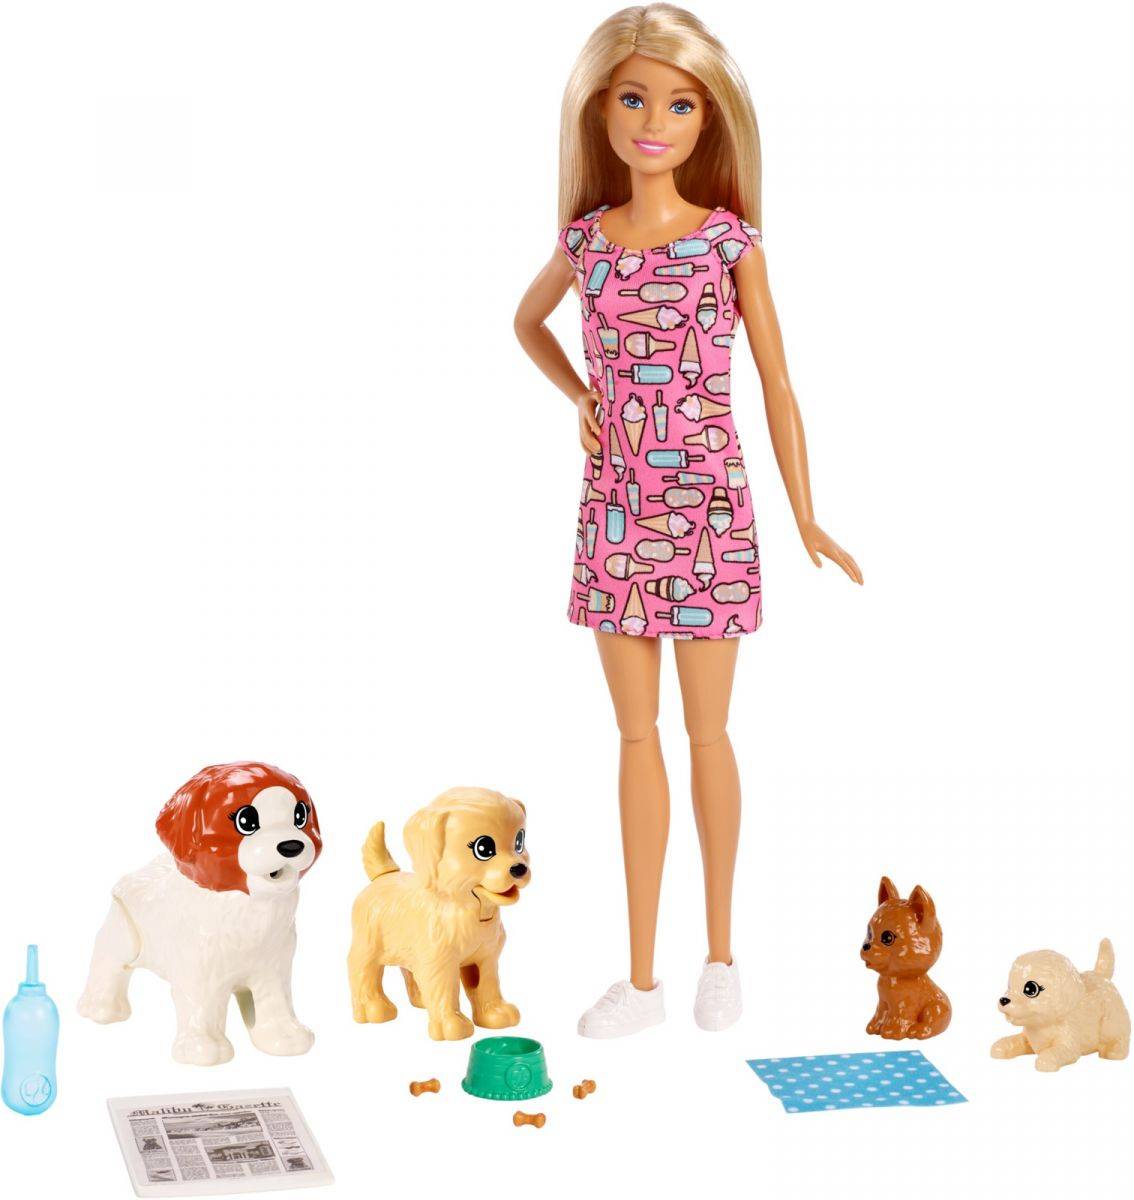  Barbie Игровой набор "Barbie и щенки"